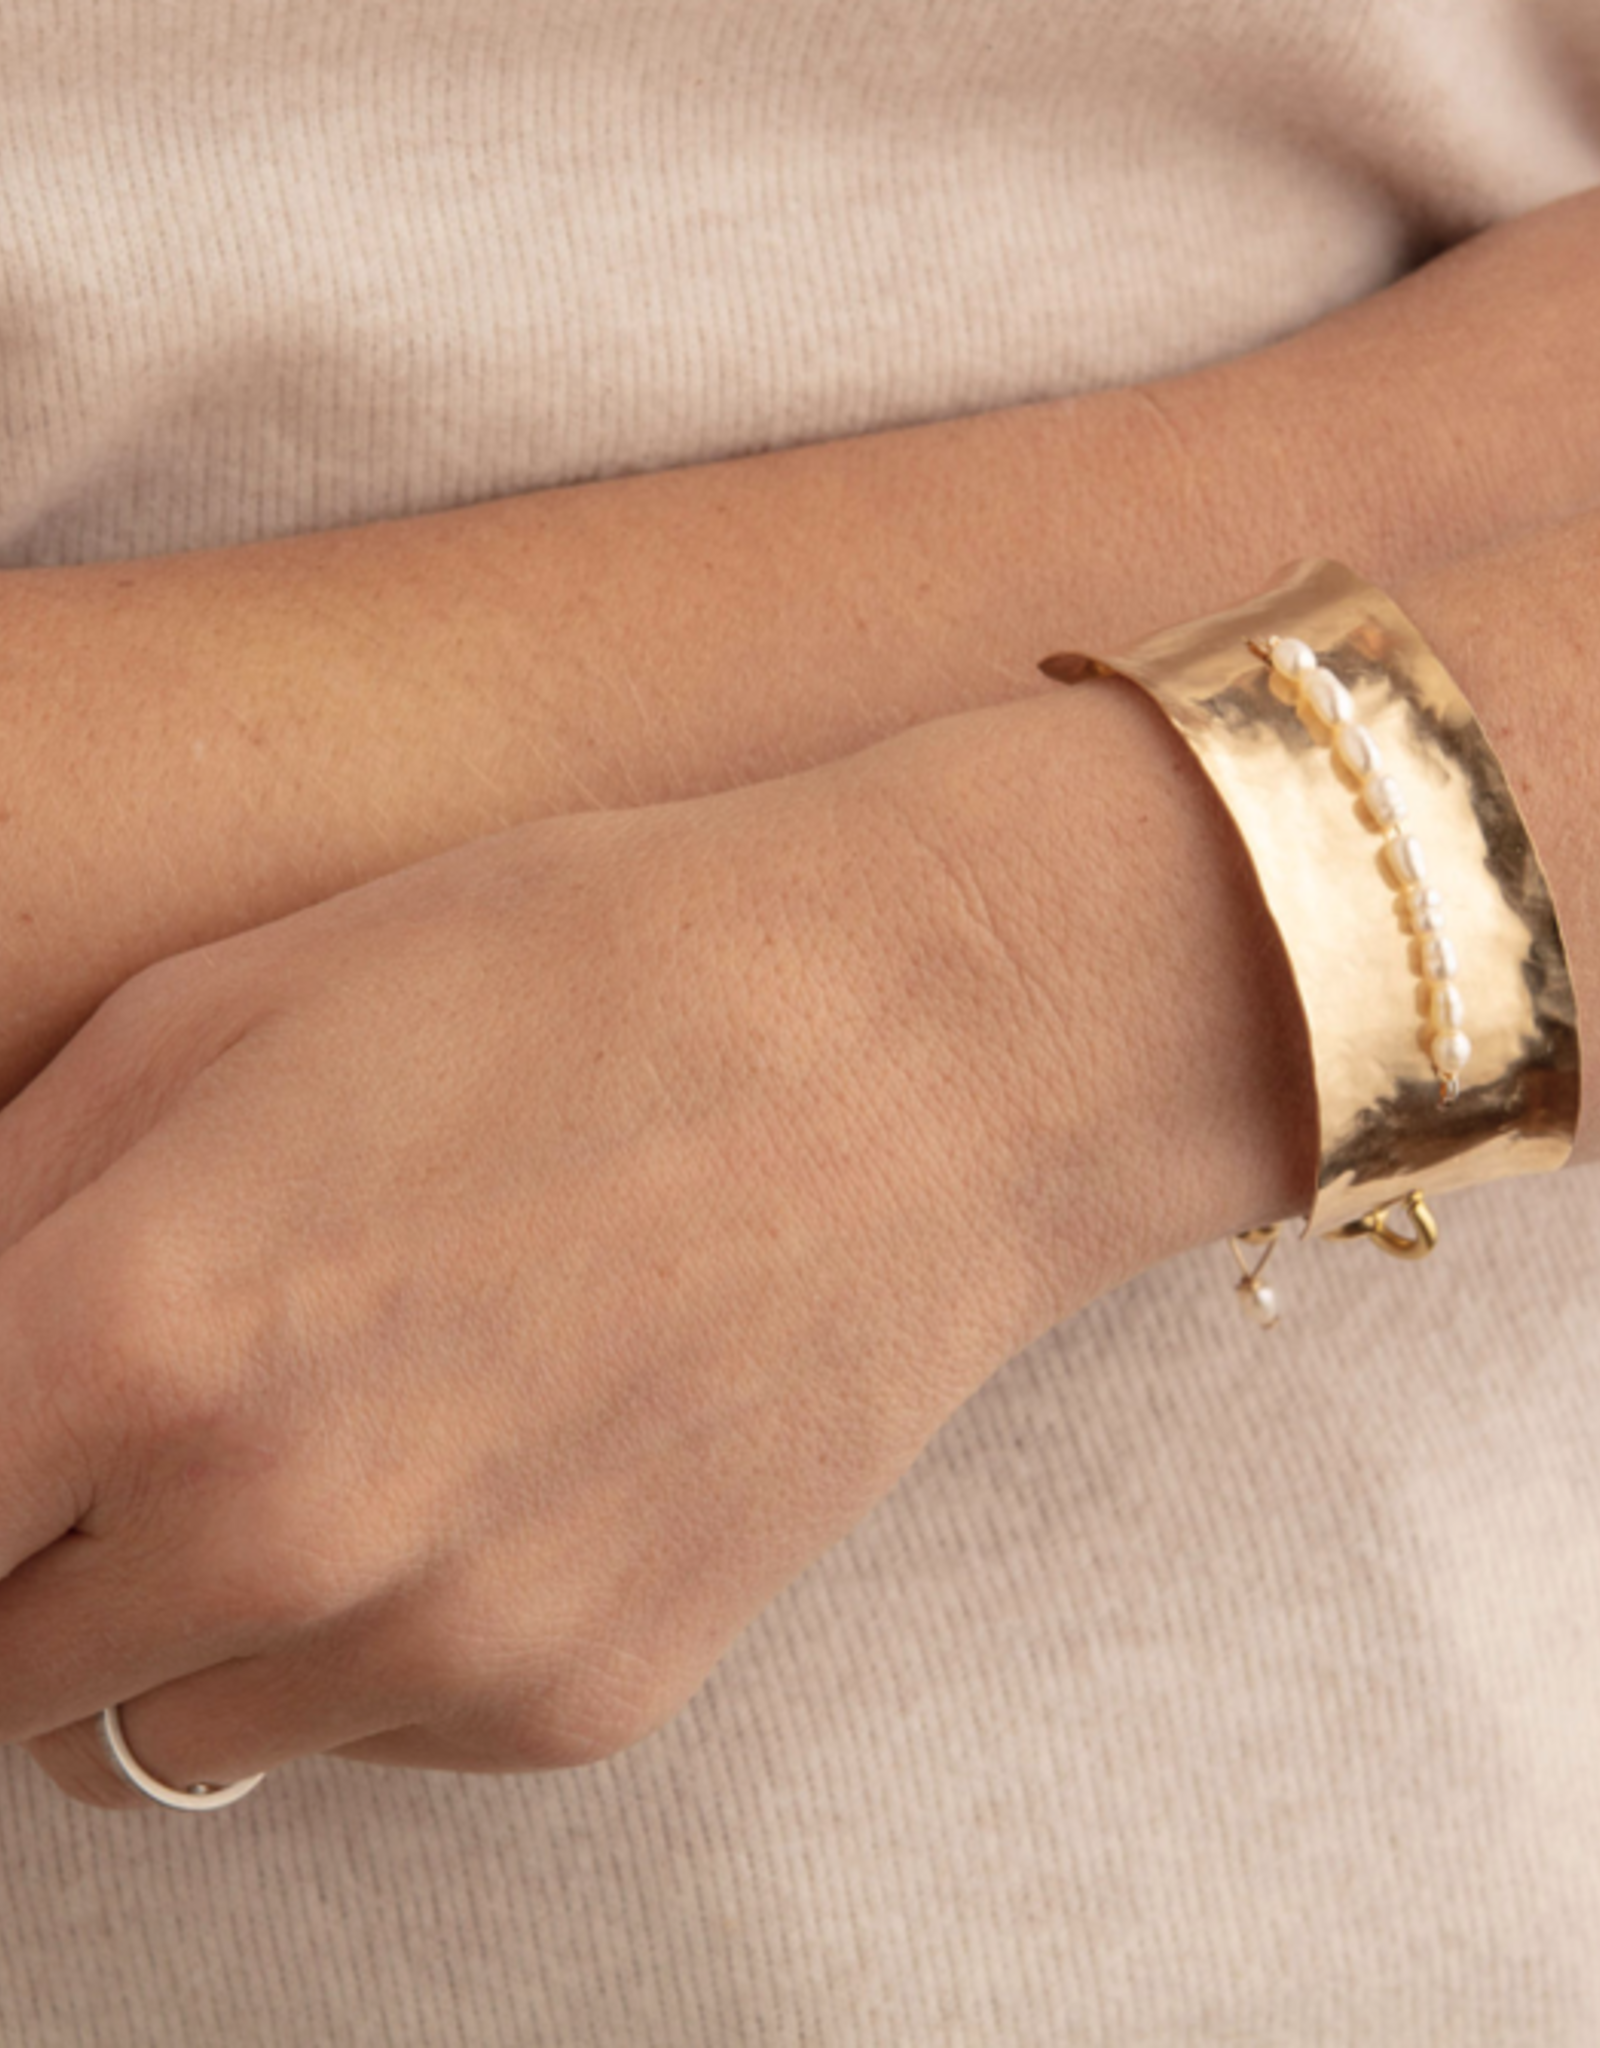 18k Gold Cuff Bracelet. Solid Gold Cuff. Hammered Gold Cuff. | Etsy |  Armband voor mannen, Sieraden ideeën, Goud